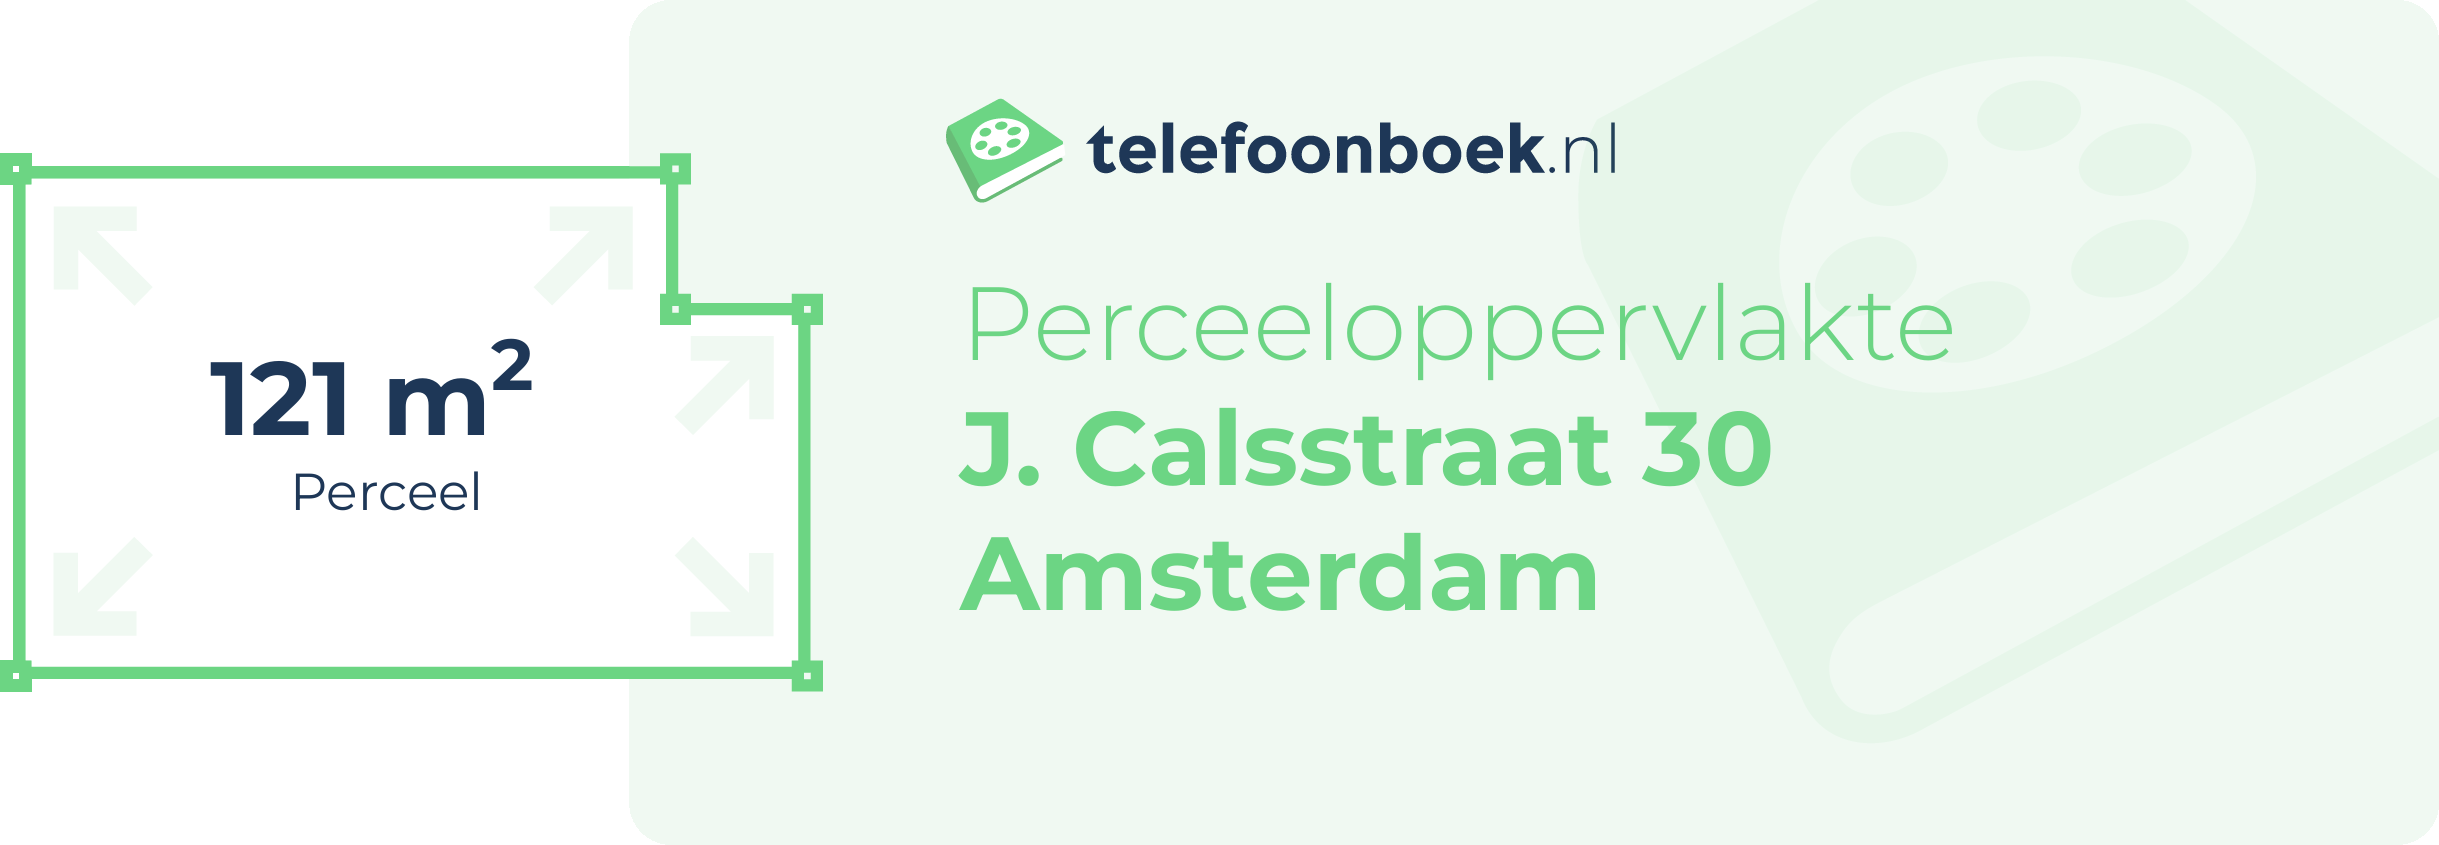 Perceeloppervlakte J. Calsstraat 30 Amsterdam